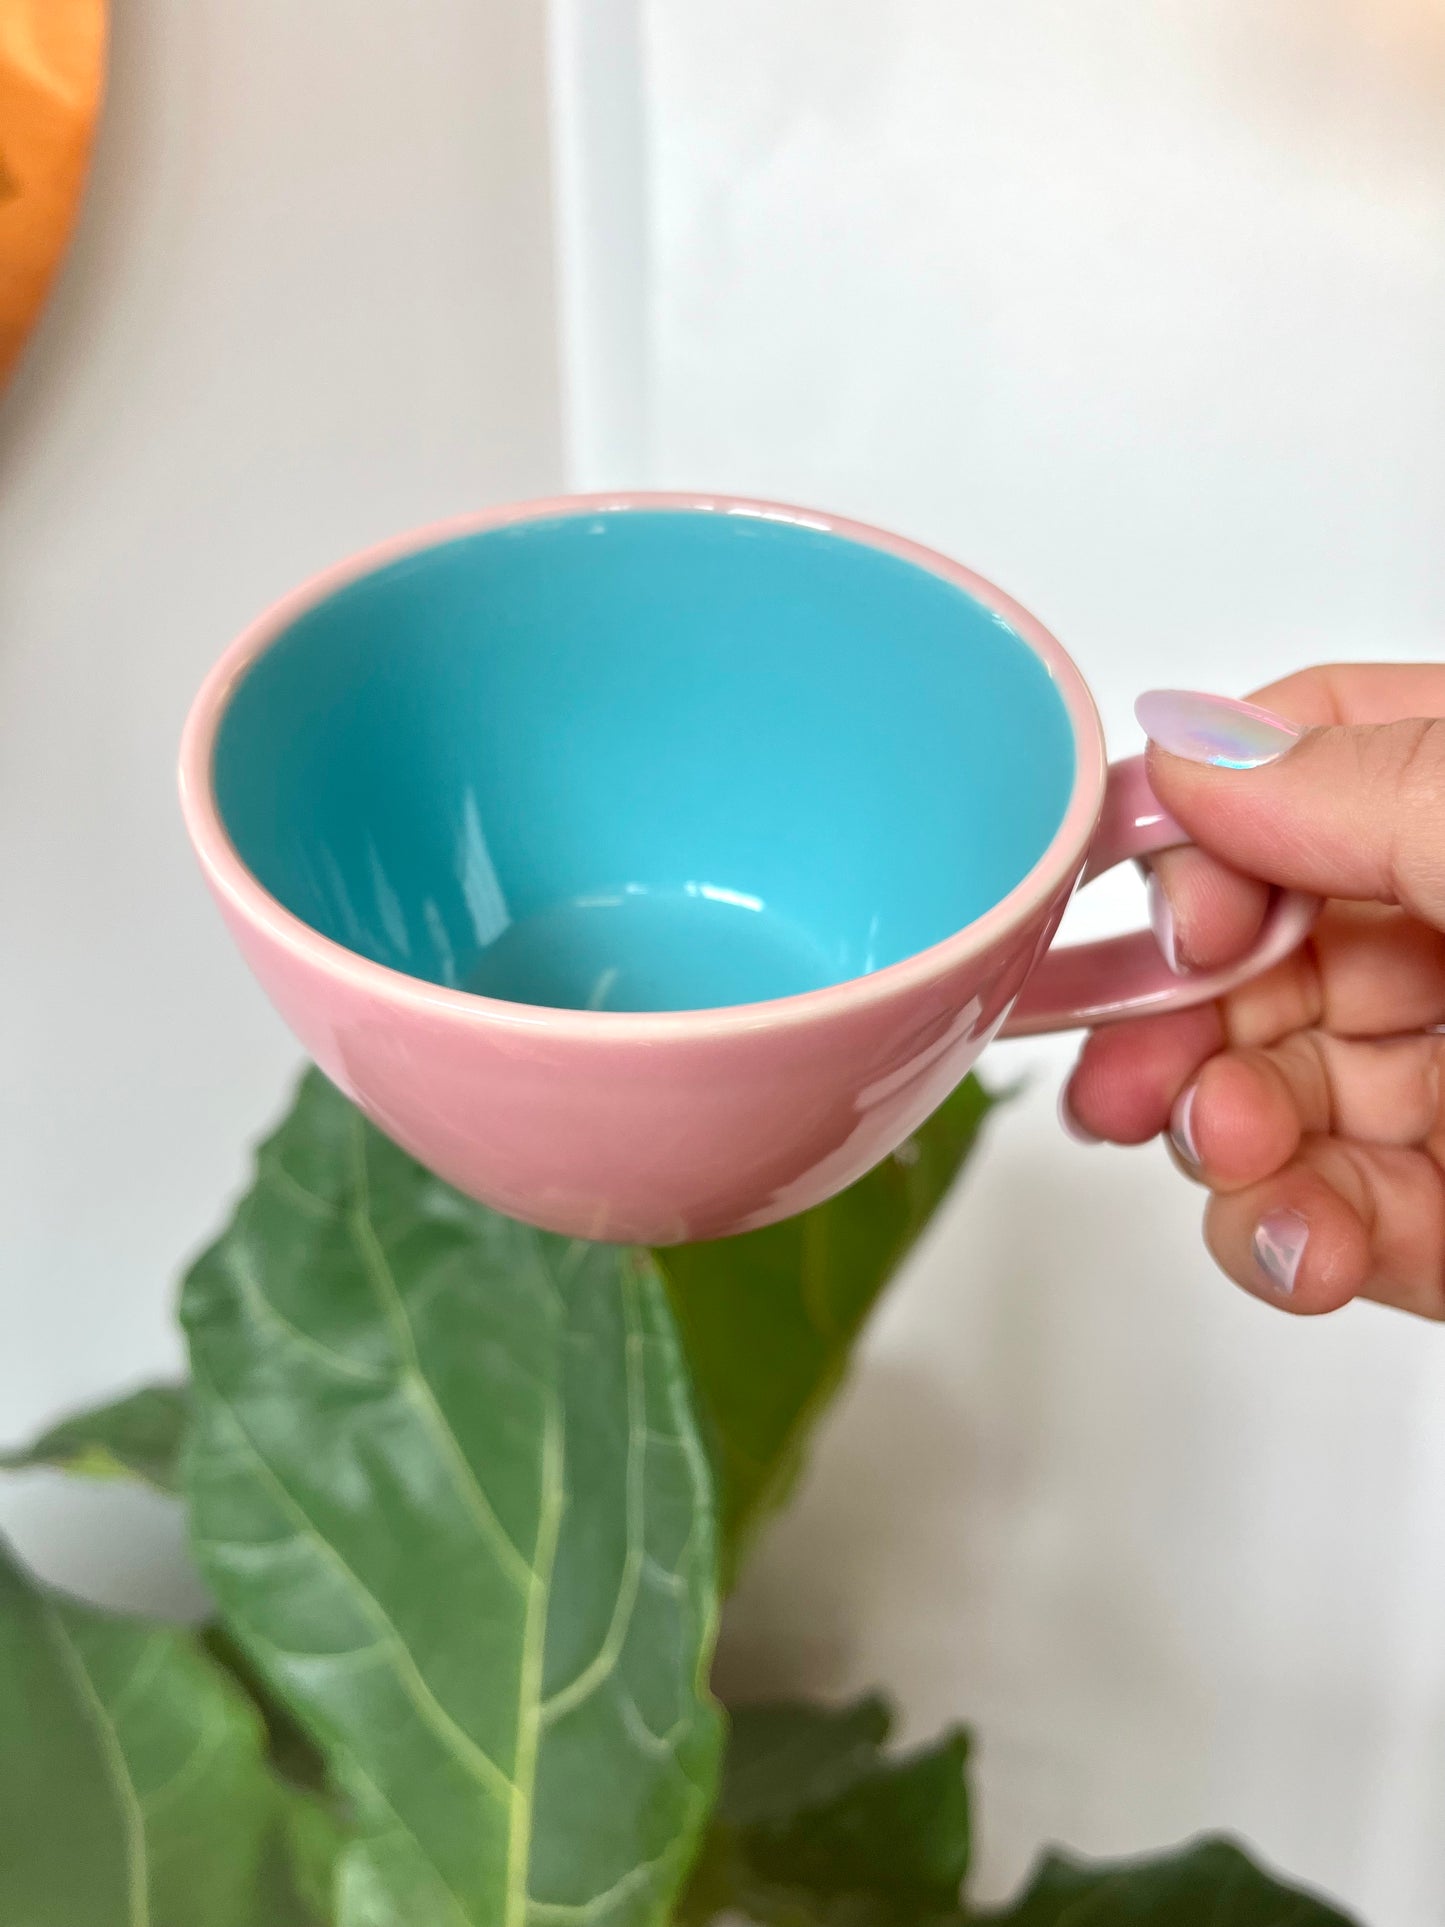 Vintage Lindt-Stymeist Colorways Tea Cups